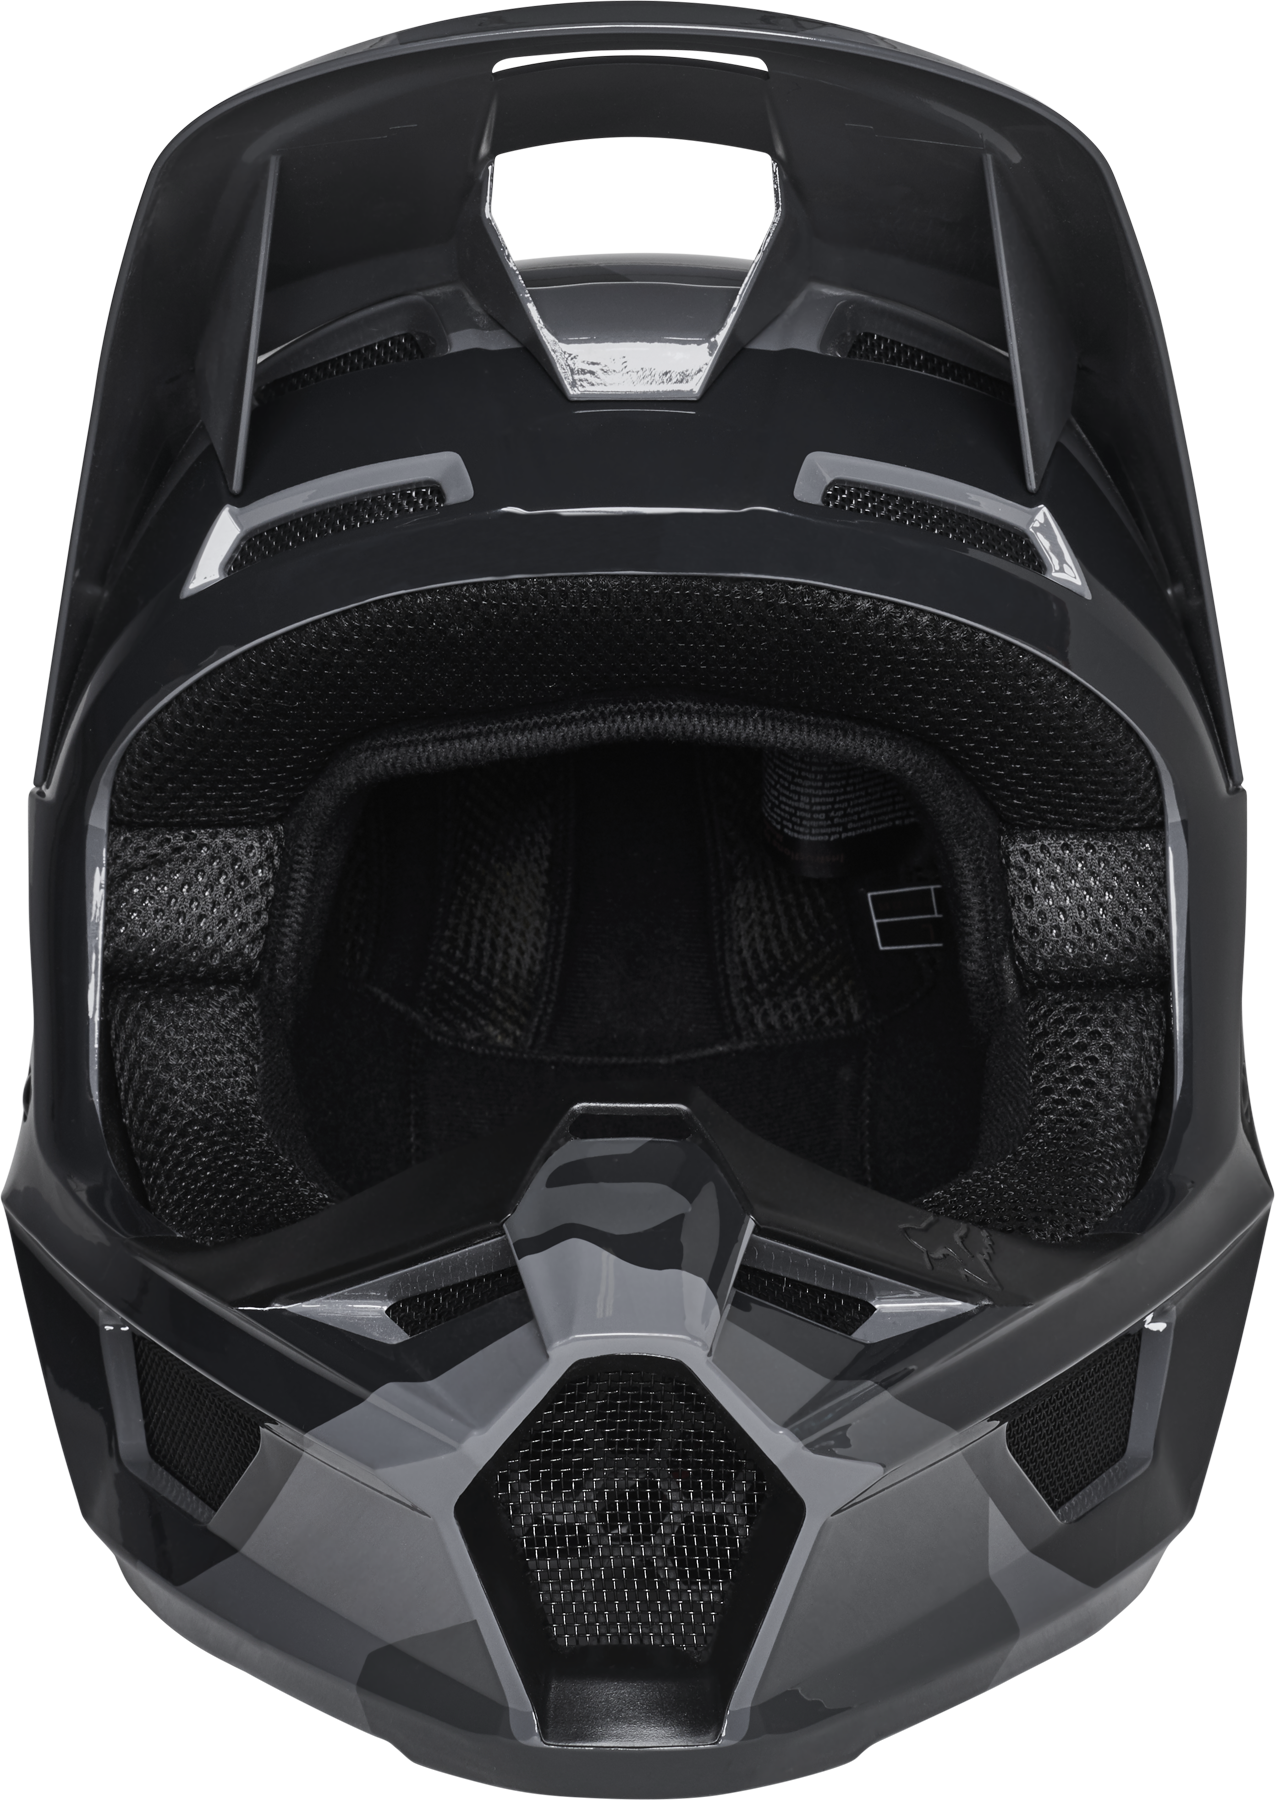 Fox Racing V1 BNKR Helmet  - Black Camo